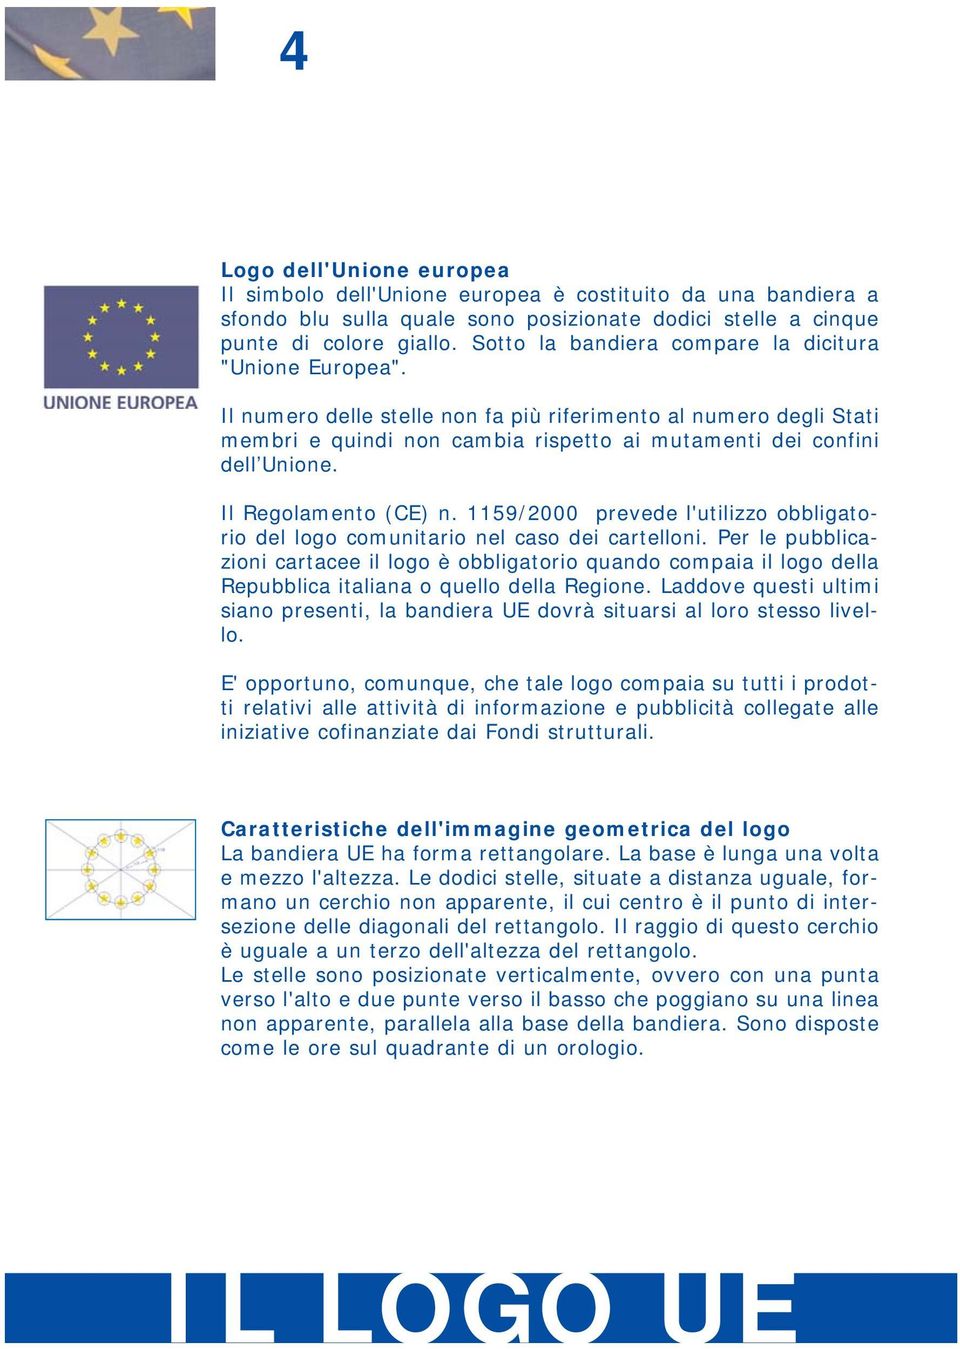 Il Regolamento (CE) n. 1159/2000 prevede l'utilizzo obbligatorio del logo comunitario nel caso dei cartelloni.